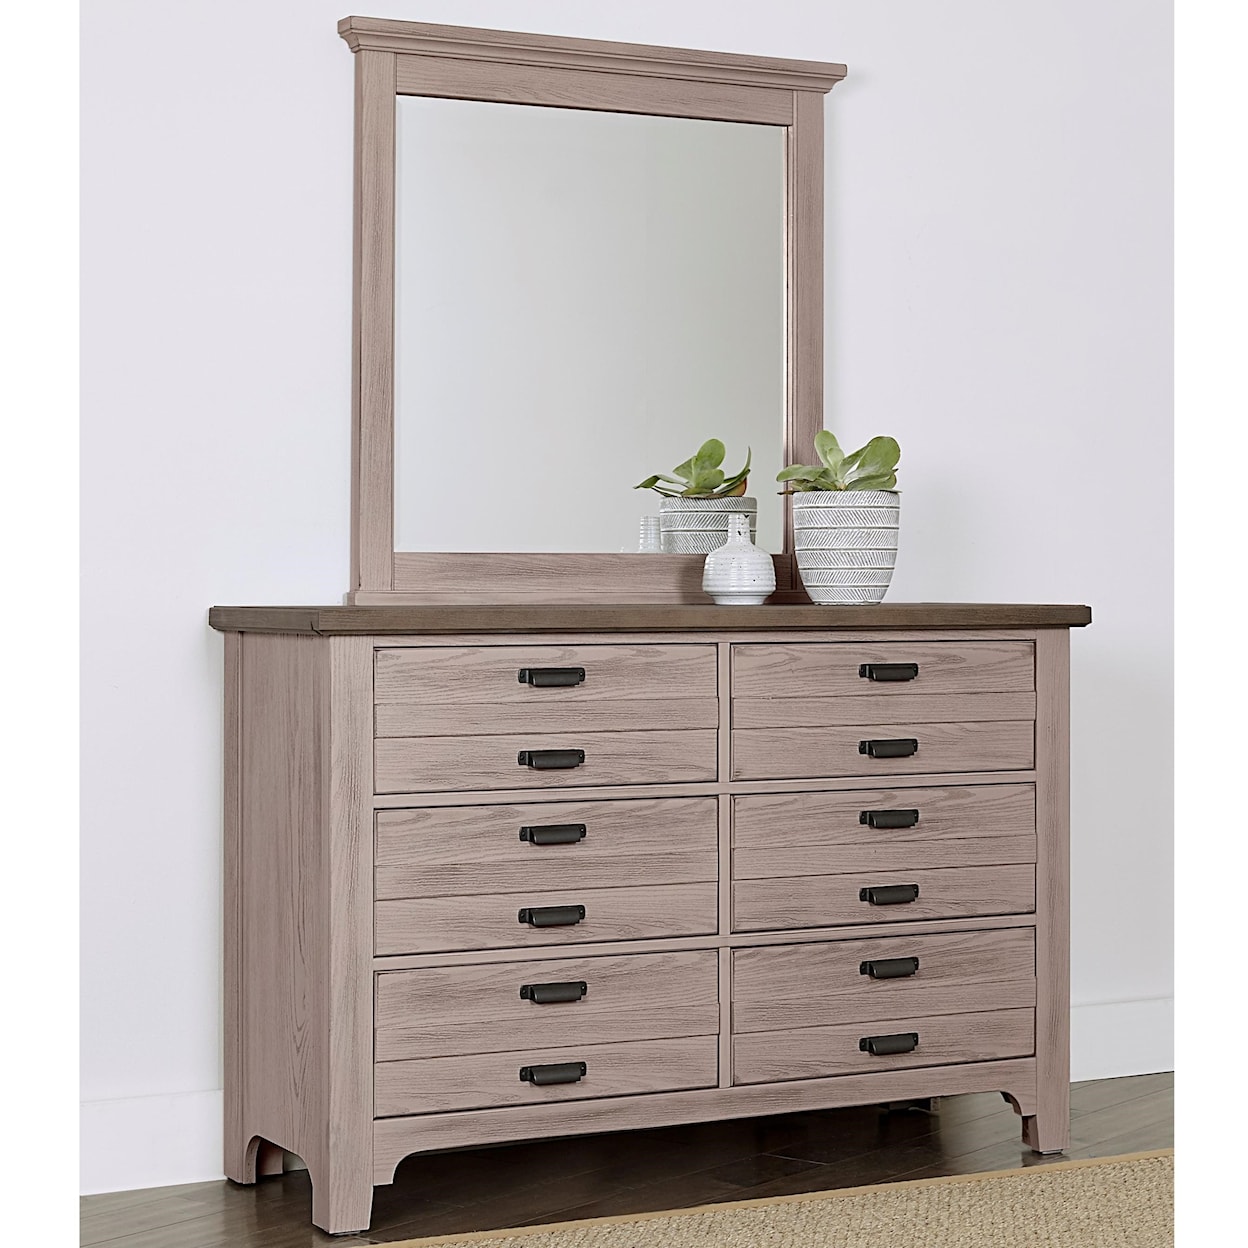 Laurel Mercantile Co. Bungalow Double Dresser and Landscape Mirror